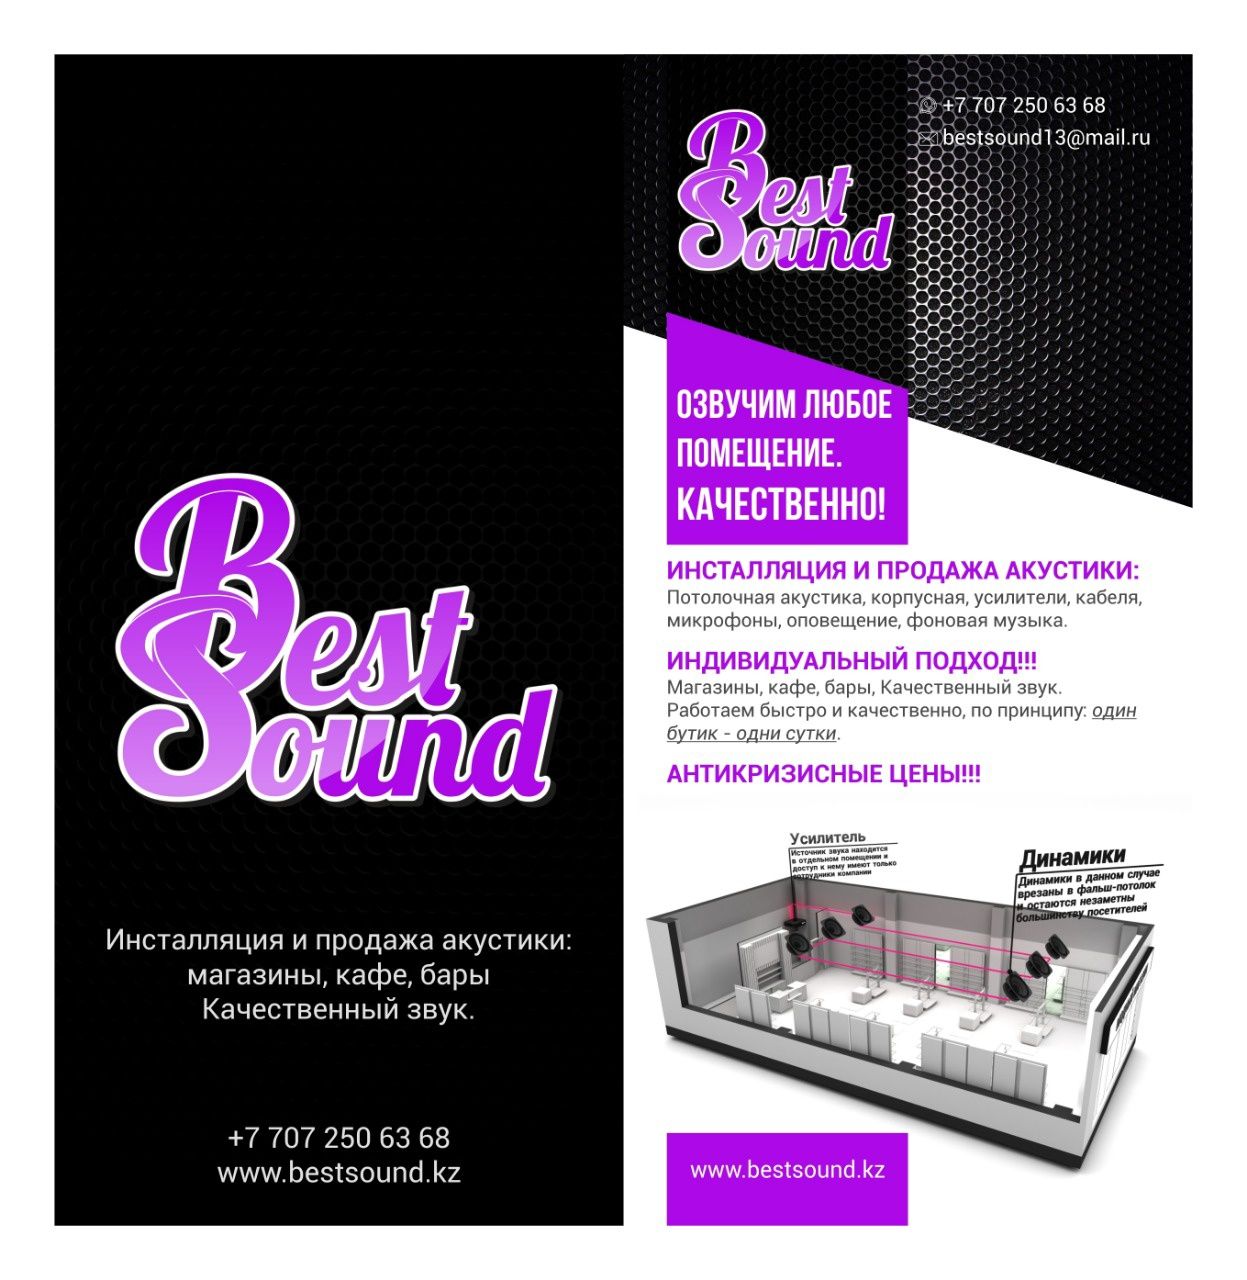 Лучшие акустические системы Bestsound.kz